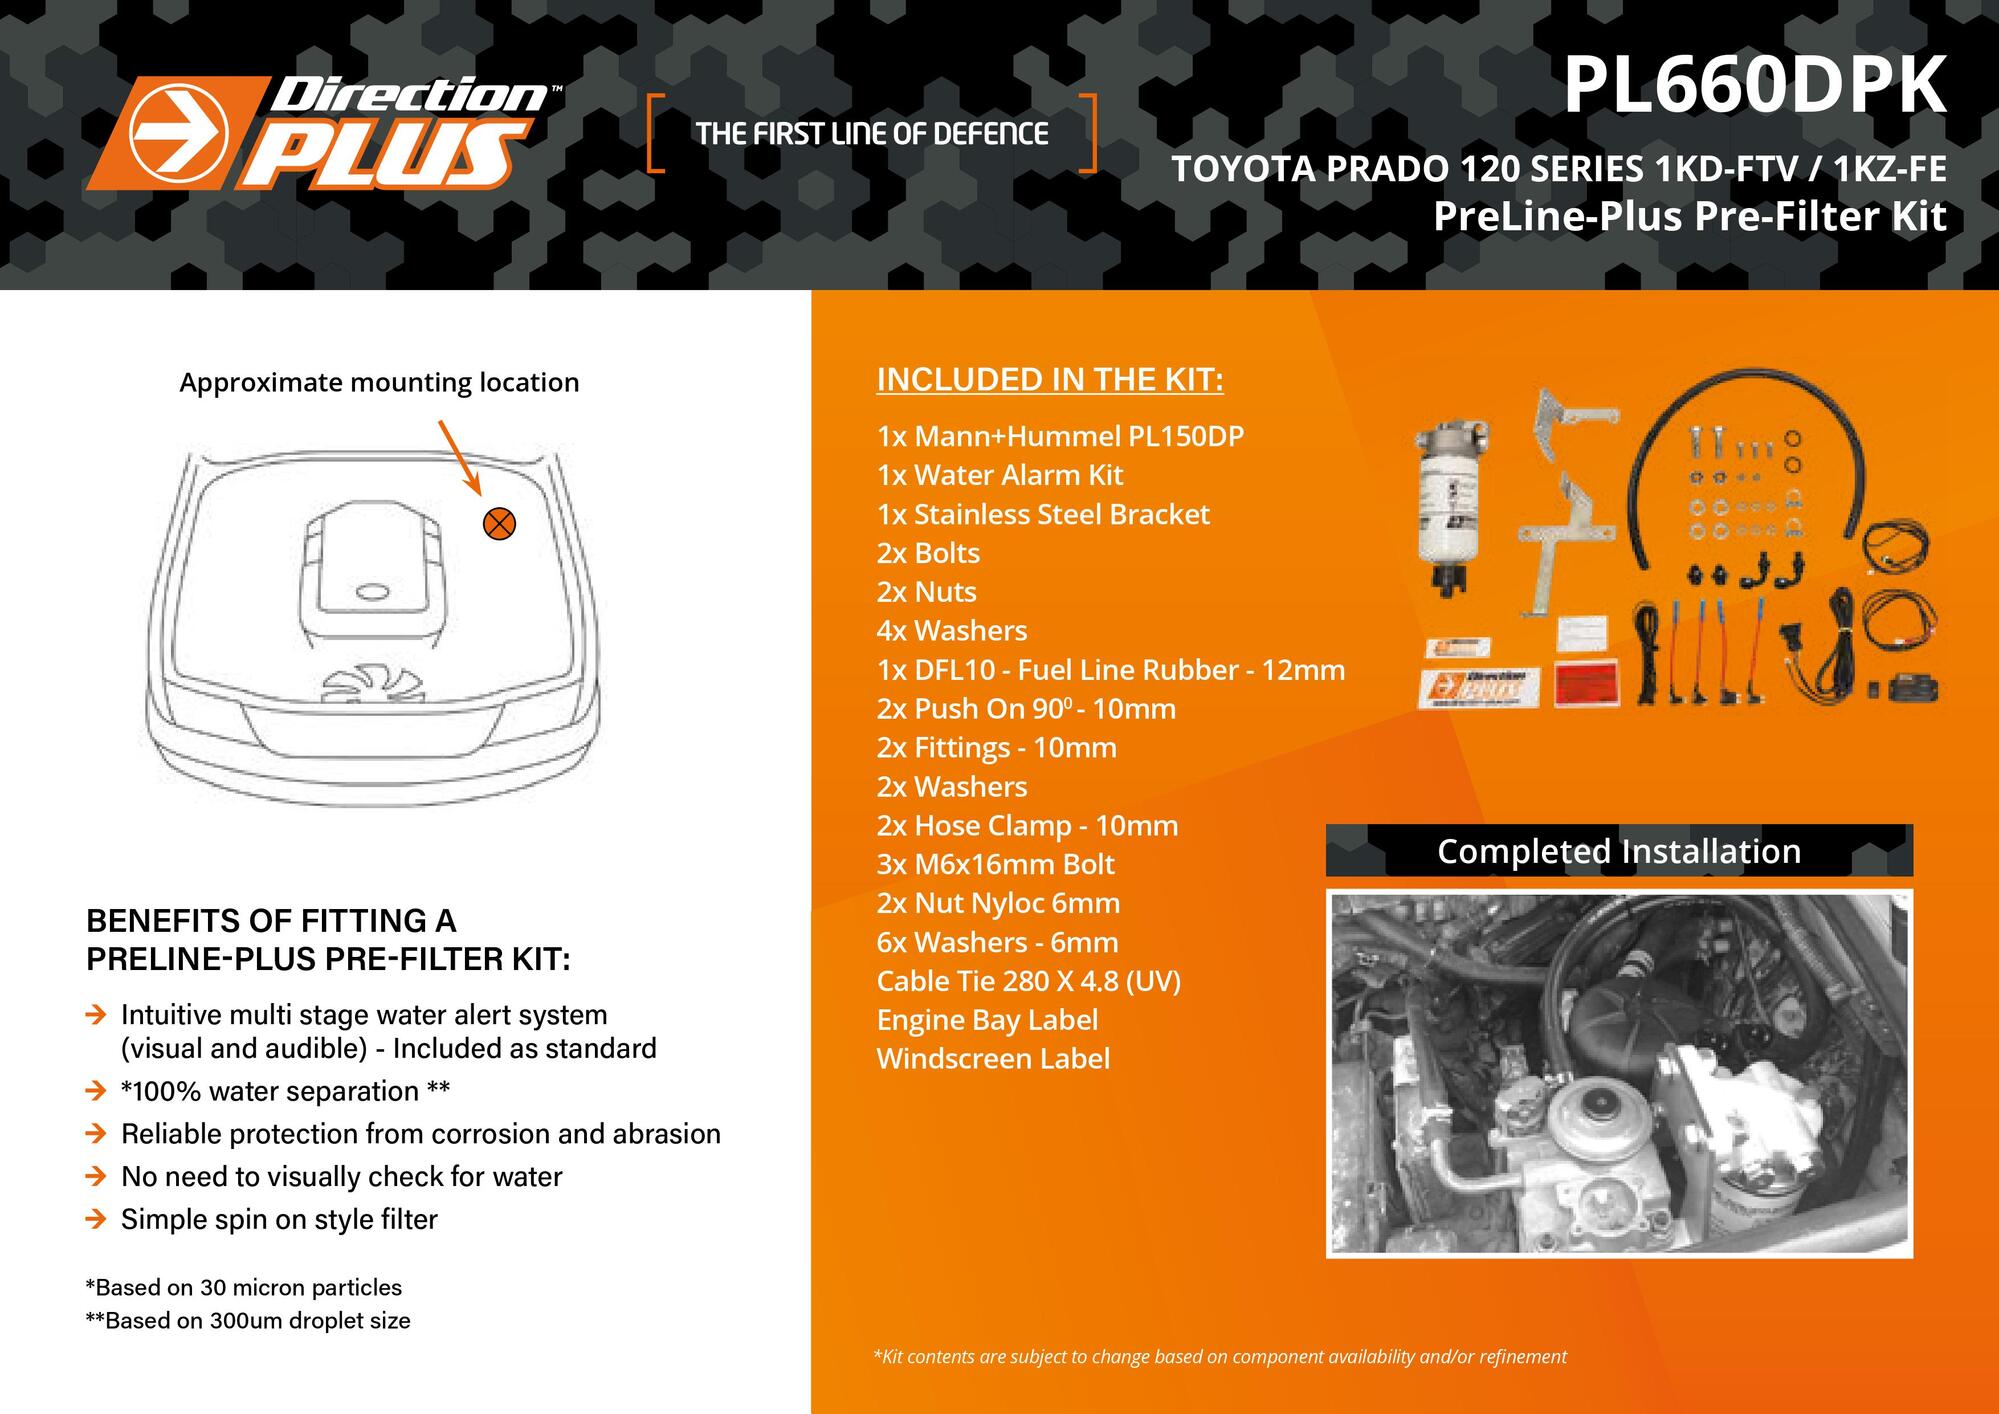 PreLine-Plus Pre-Filter Kit For Toyota Prado 120 3.0L 1KD-FTV & 1KZ-FE 2003 - 2009